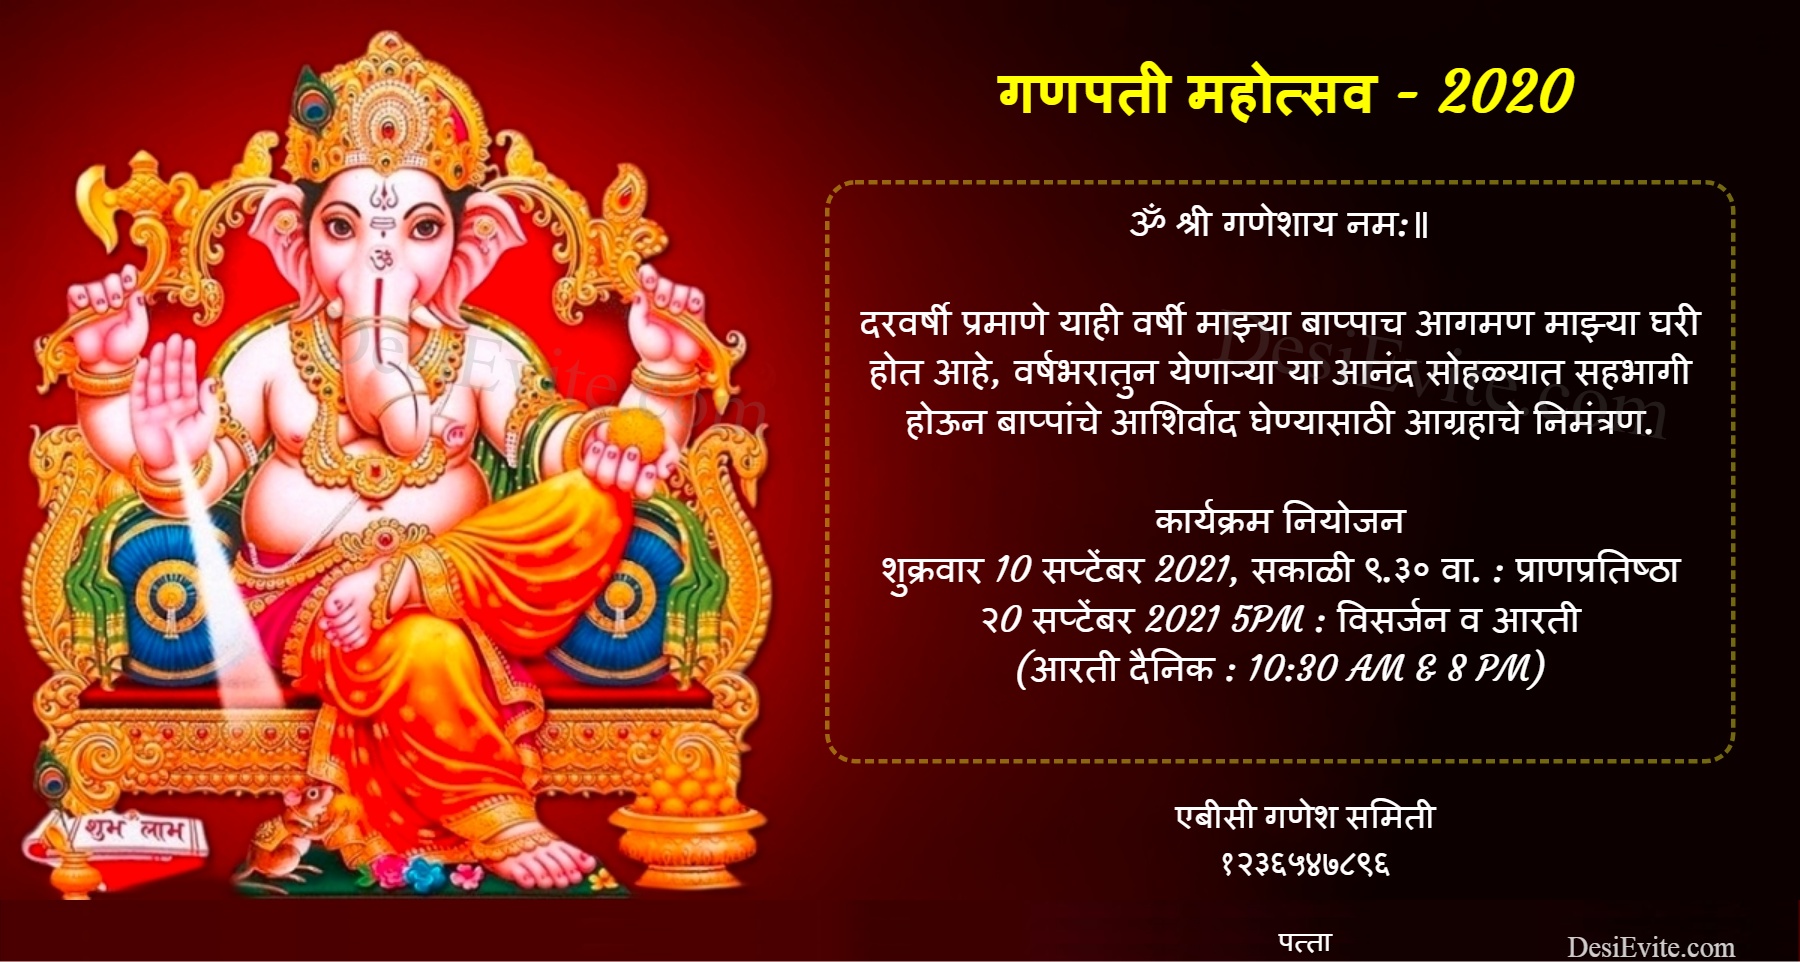 Marathi ganesh mahotsav 2018 invitation card 93 69